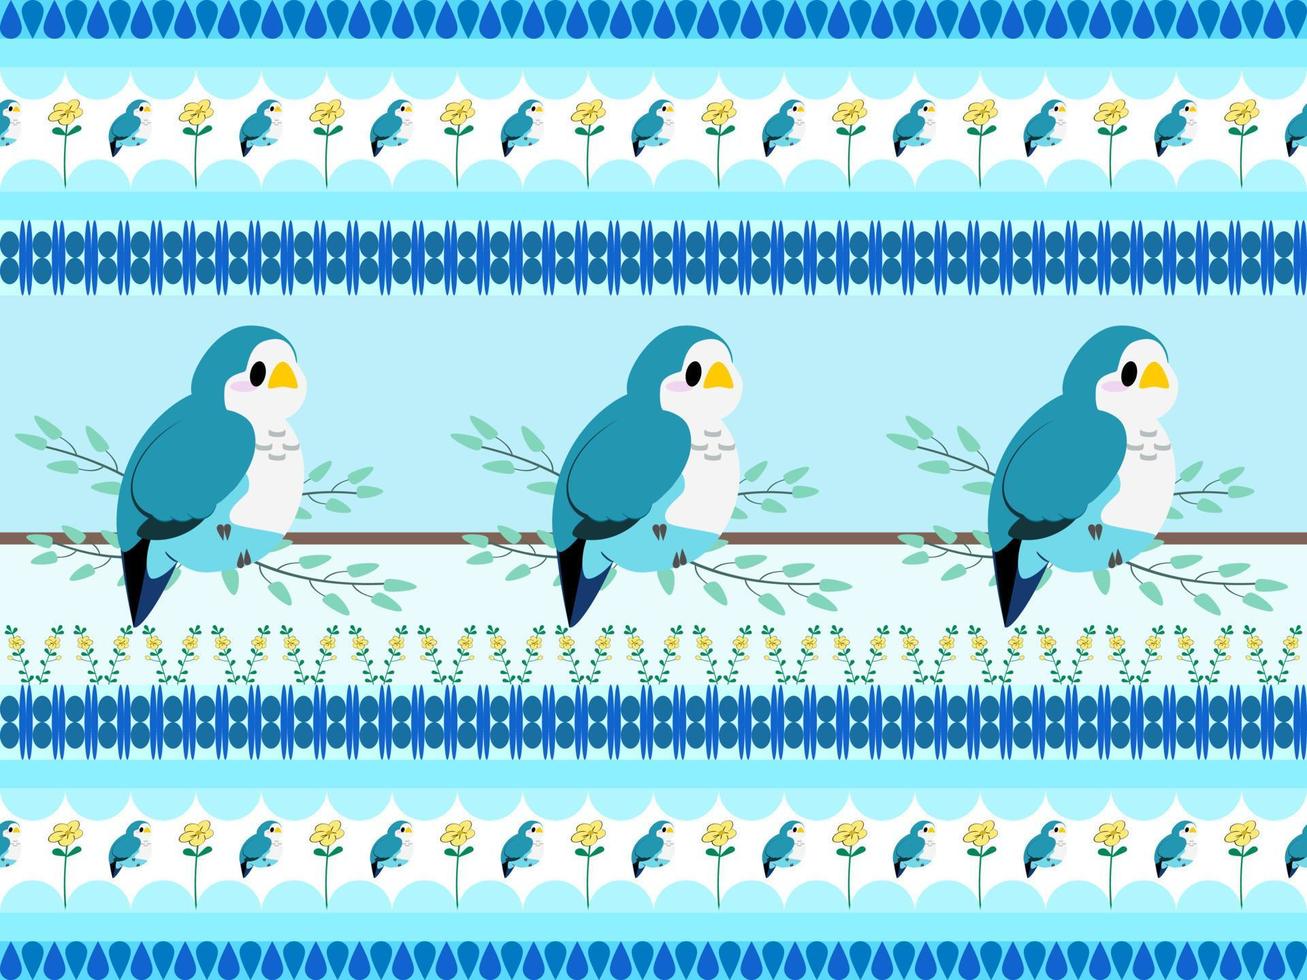 vogel cartoon karakter naadloos patroon op blauwe achtergrond vector